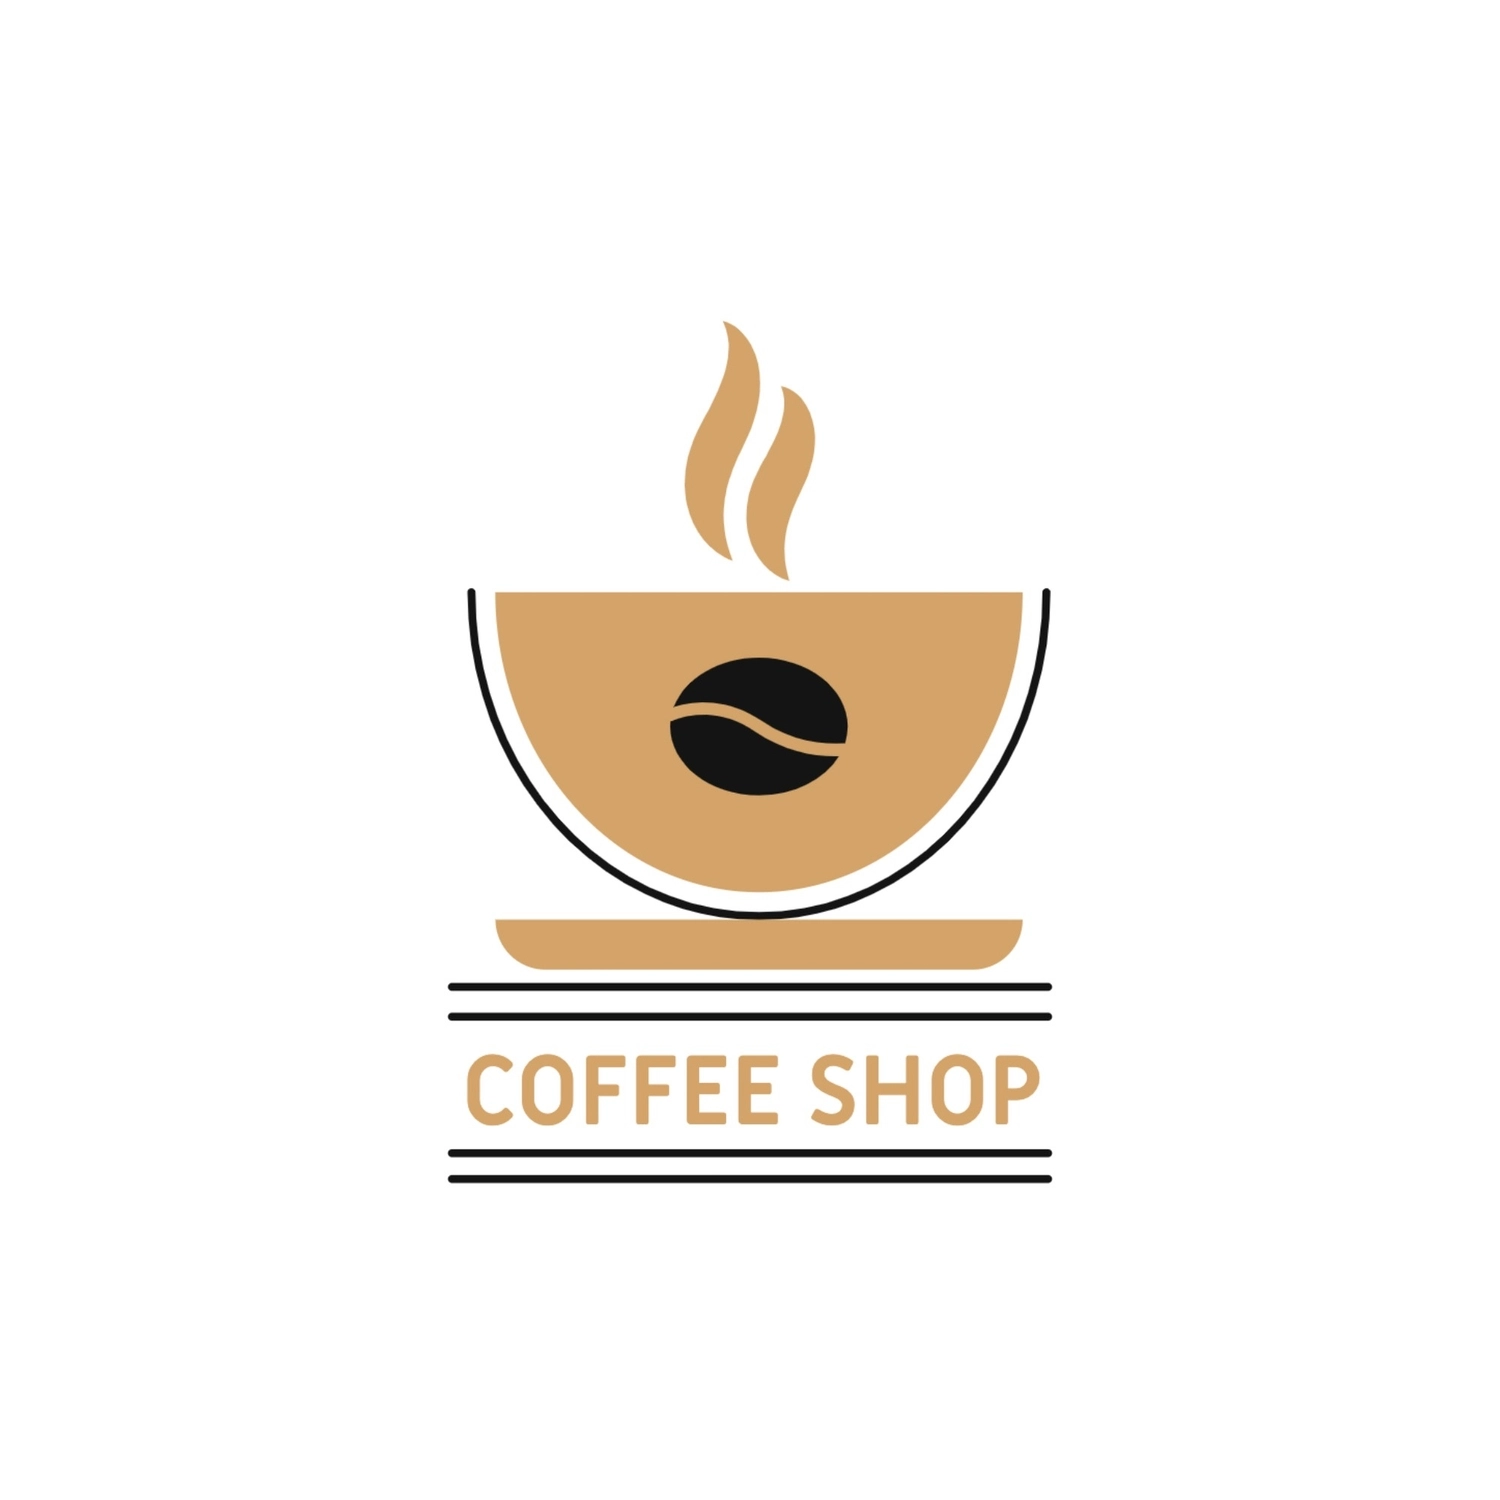 コーヒーショップのロゴ, コーヒーカップ, 作成, デザイン, ロゴテンプレート